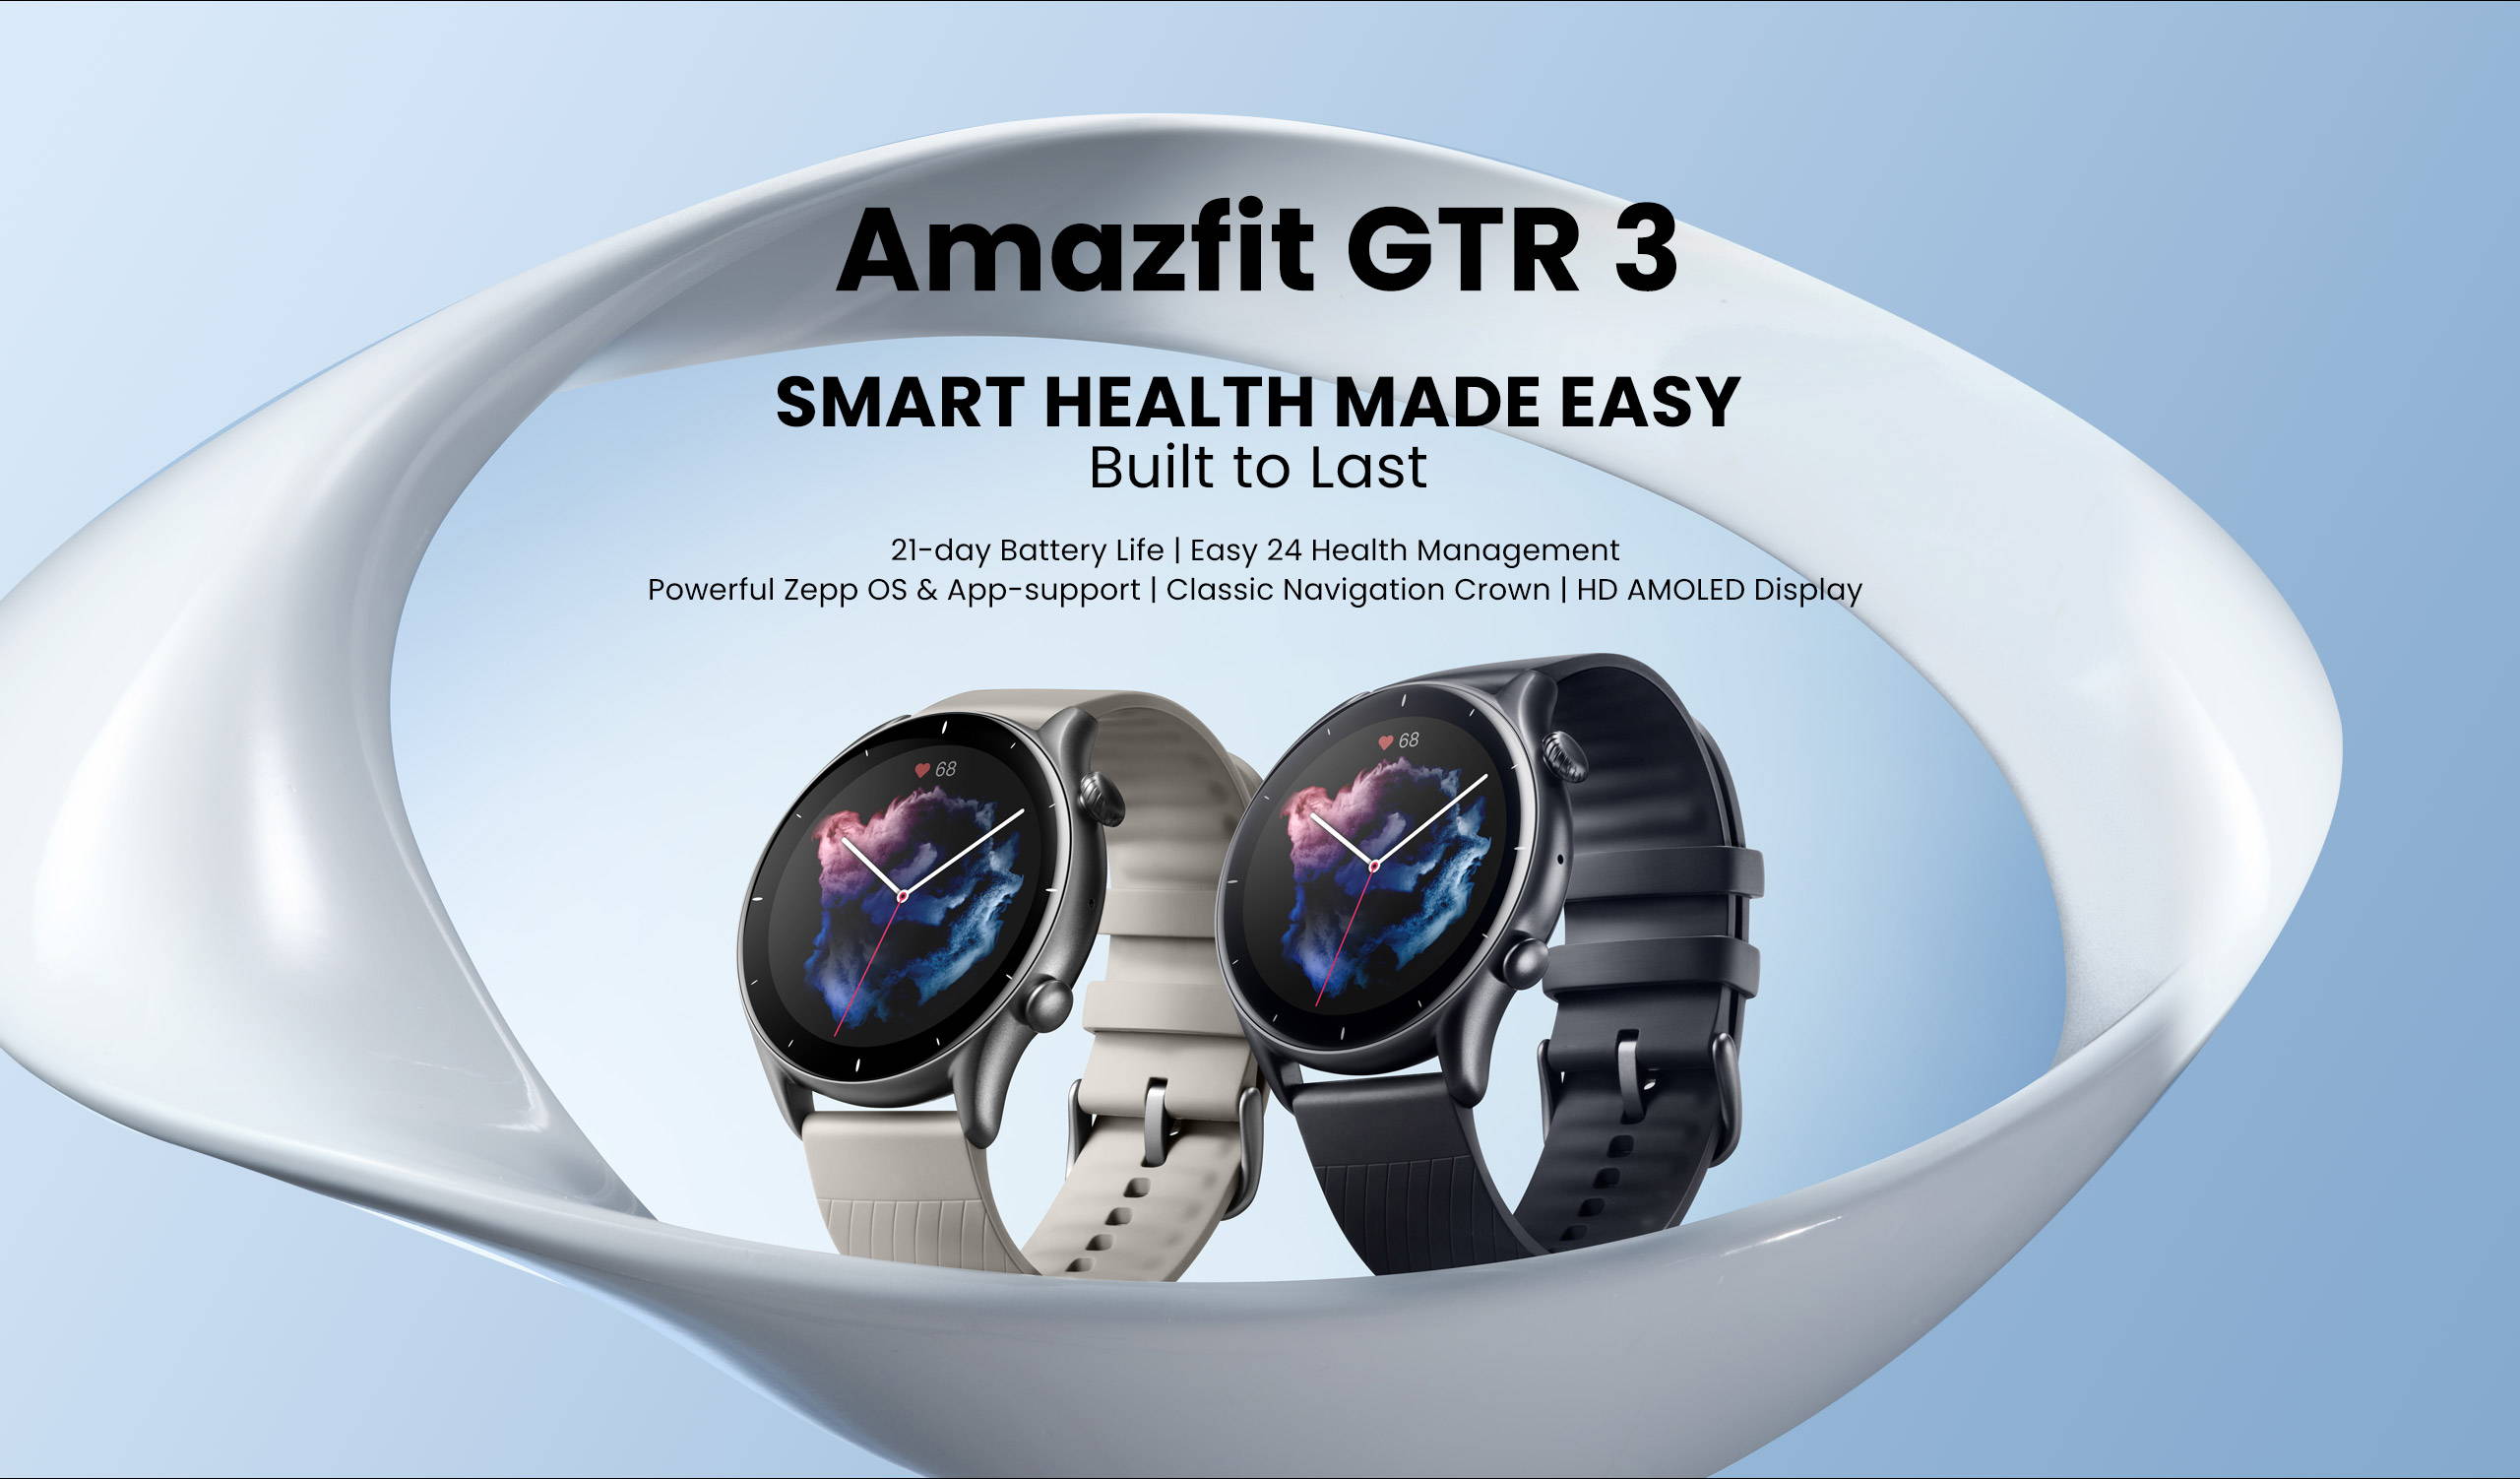 Smartwatch A M A Z F I T Gtr 3 KaBuM